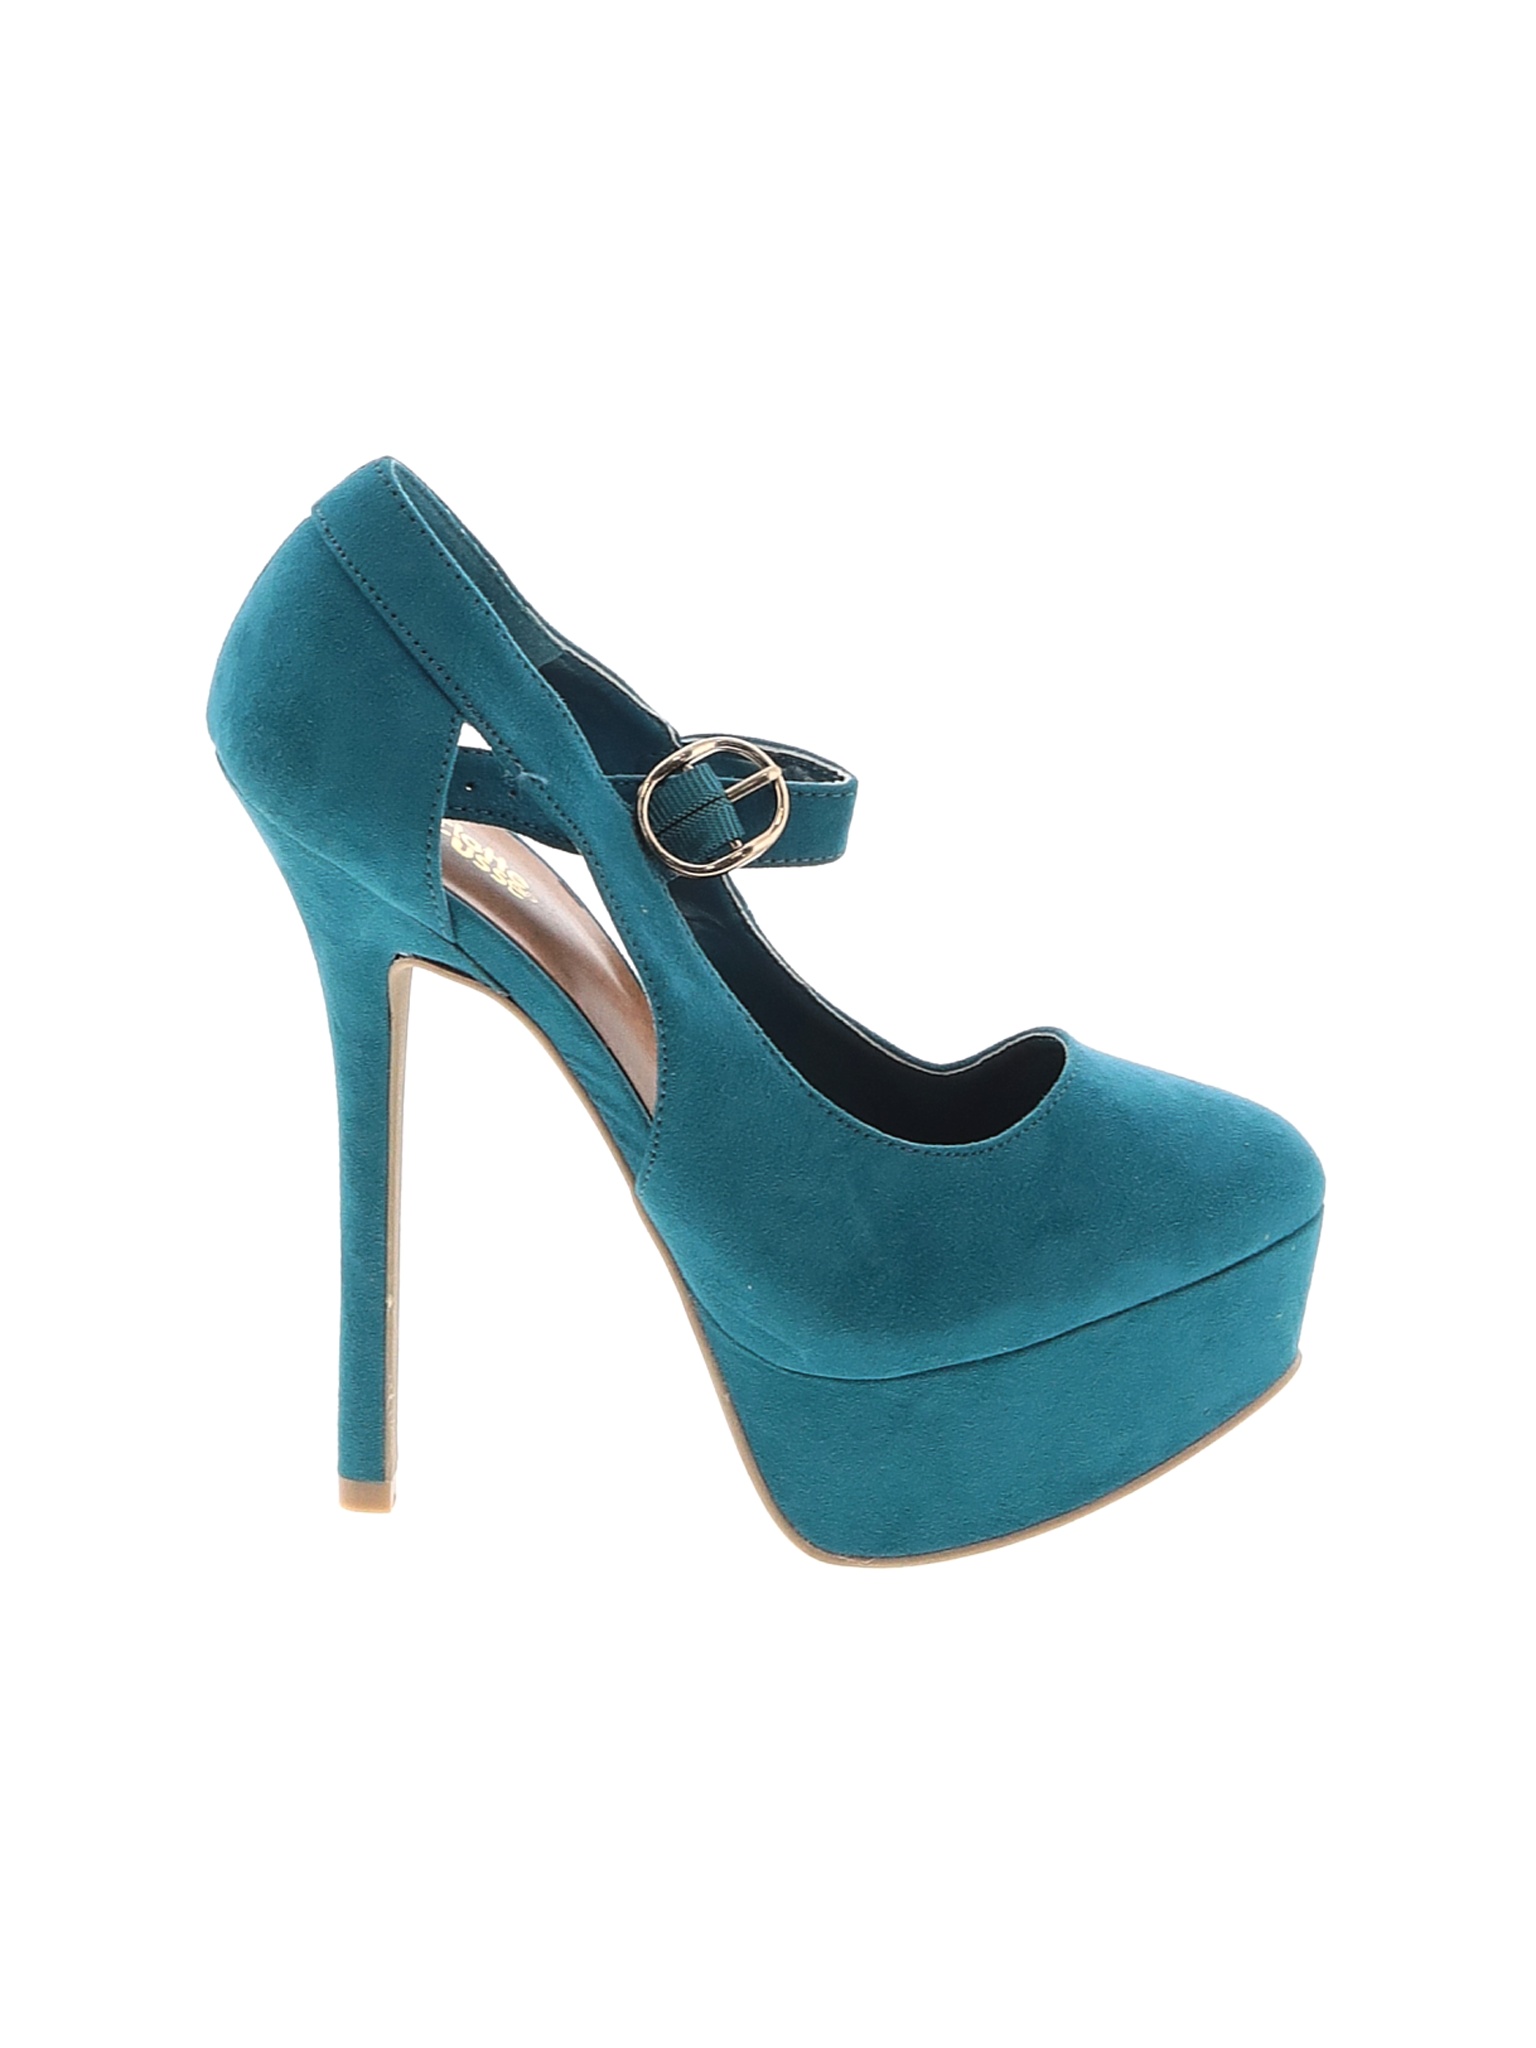 charlotte russe blue heels